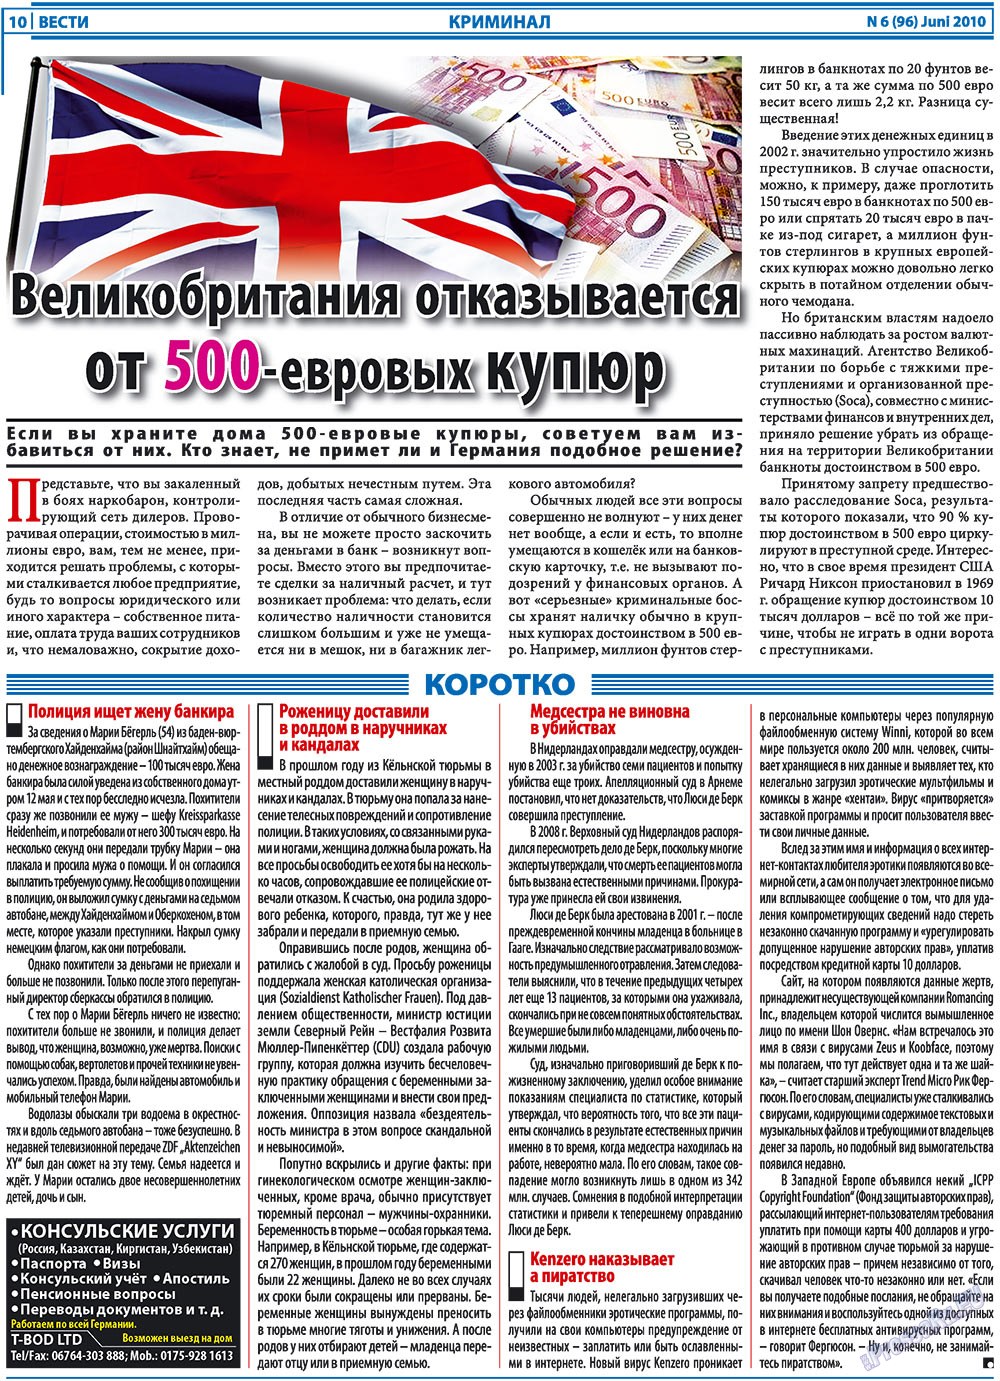 Вести, газета. 2010 №6 стр.10